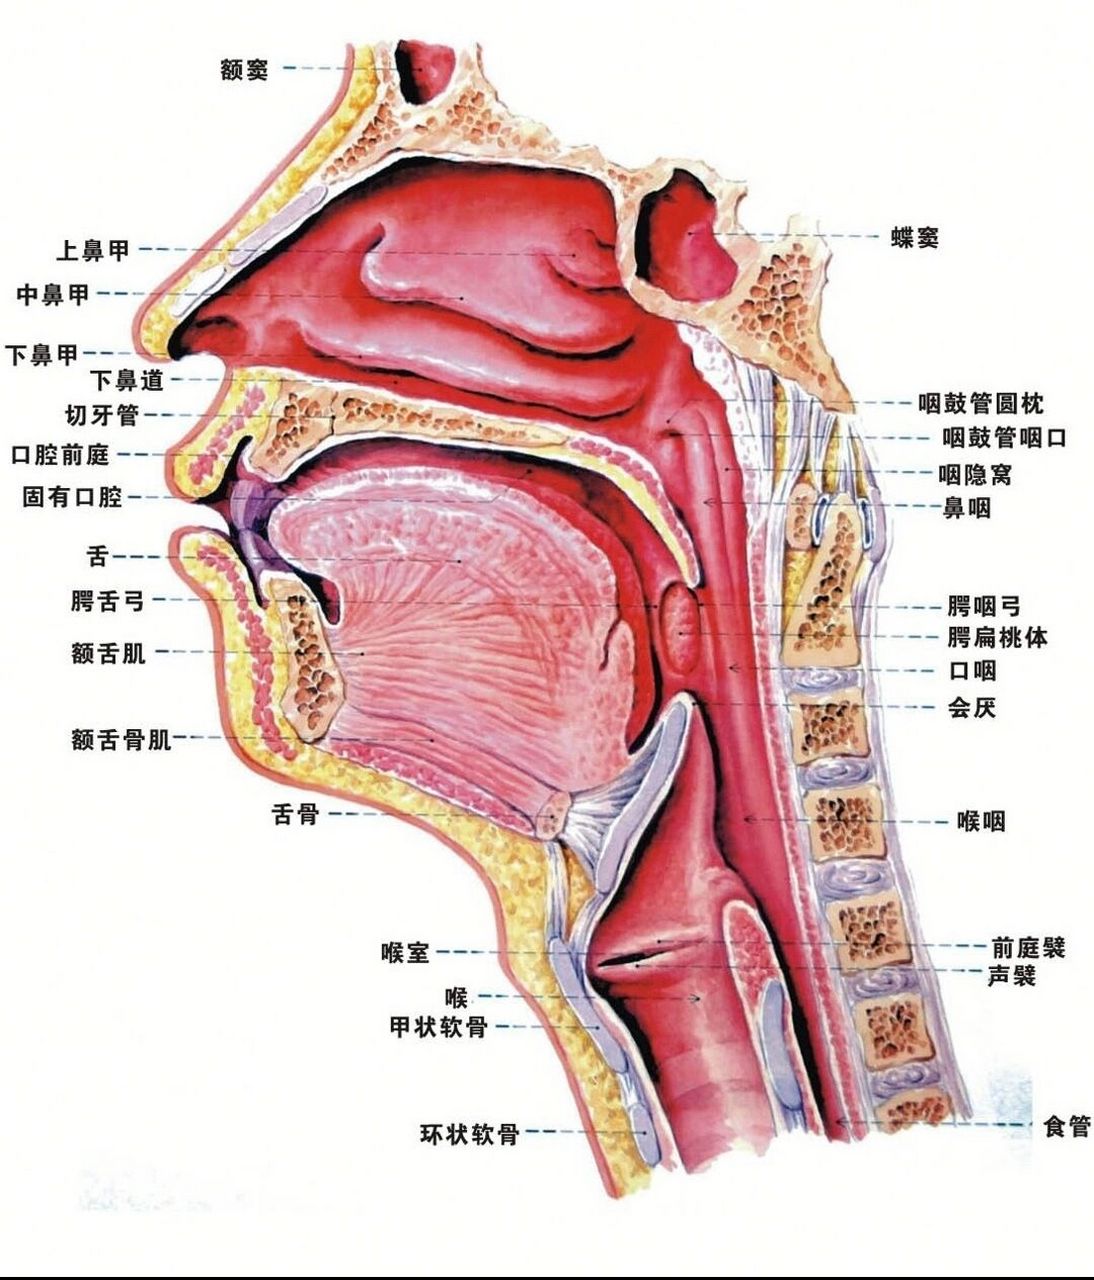 喉位于颈前部中份,喉咽的前方,上界为会厌上缘(平